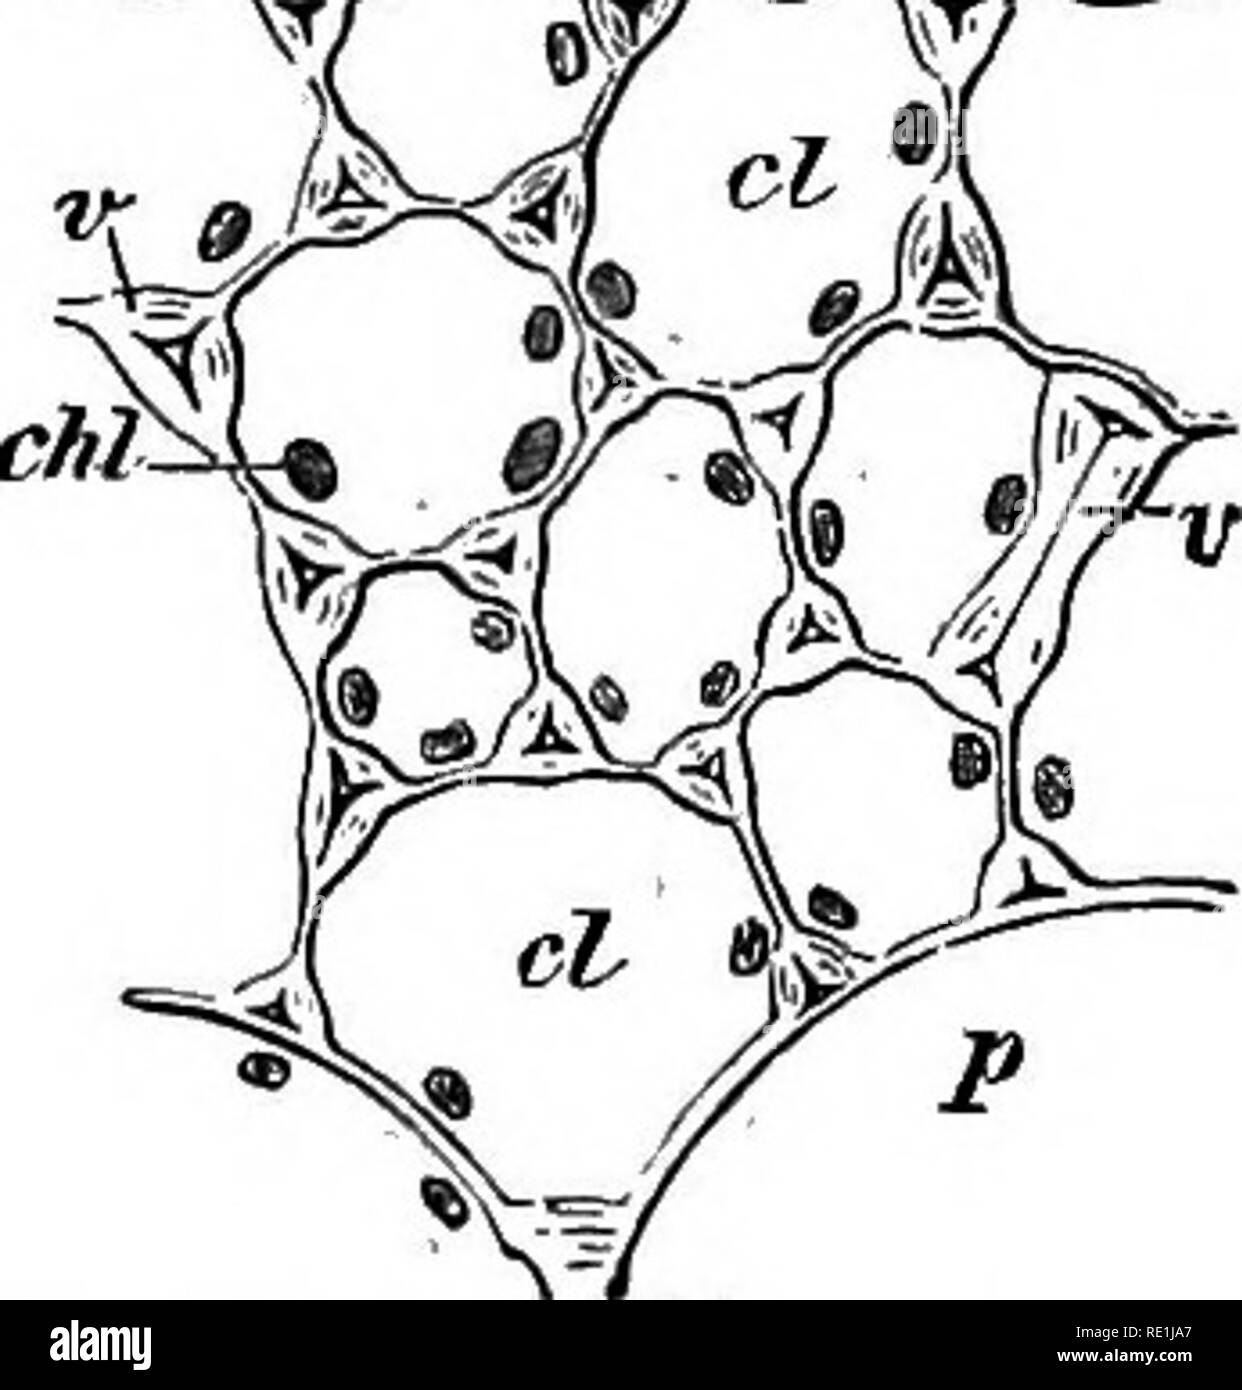 . Ein Handbuch der Botanik. Botanik. 328 HANDBUCH OP BOTANIK Abb. 702. Als piliferoics Layer bekannt. In den Wurzeln der Mono-keimblätter und Kryptogamen die wahre Epidermis nur an der Spitze weiterhin besteht, bilden nach wie vor eine vielschichtige root-Cap. Den Rest der Wurzel trägt eine piliferous Schicht, aber es ist in diesen Fällen die äußere Schicht des periblem. Die äußere Schicht der Wurzeln ist somit nicht eine wahre epi-lederhaut; es ist in der Regel die epiblema bezeichnet. Die Zellen des dermatogen sind etwas länglich, wenn in Abschnitt gesehen, und sind in der Regel reich an protoplasma. Da sie älter werden die Wände werden thickene Stockfoto